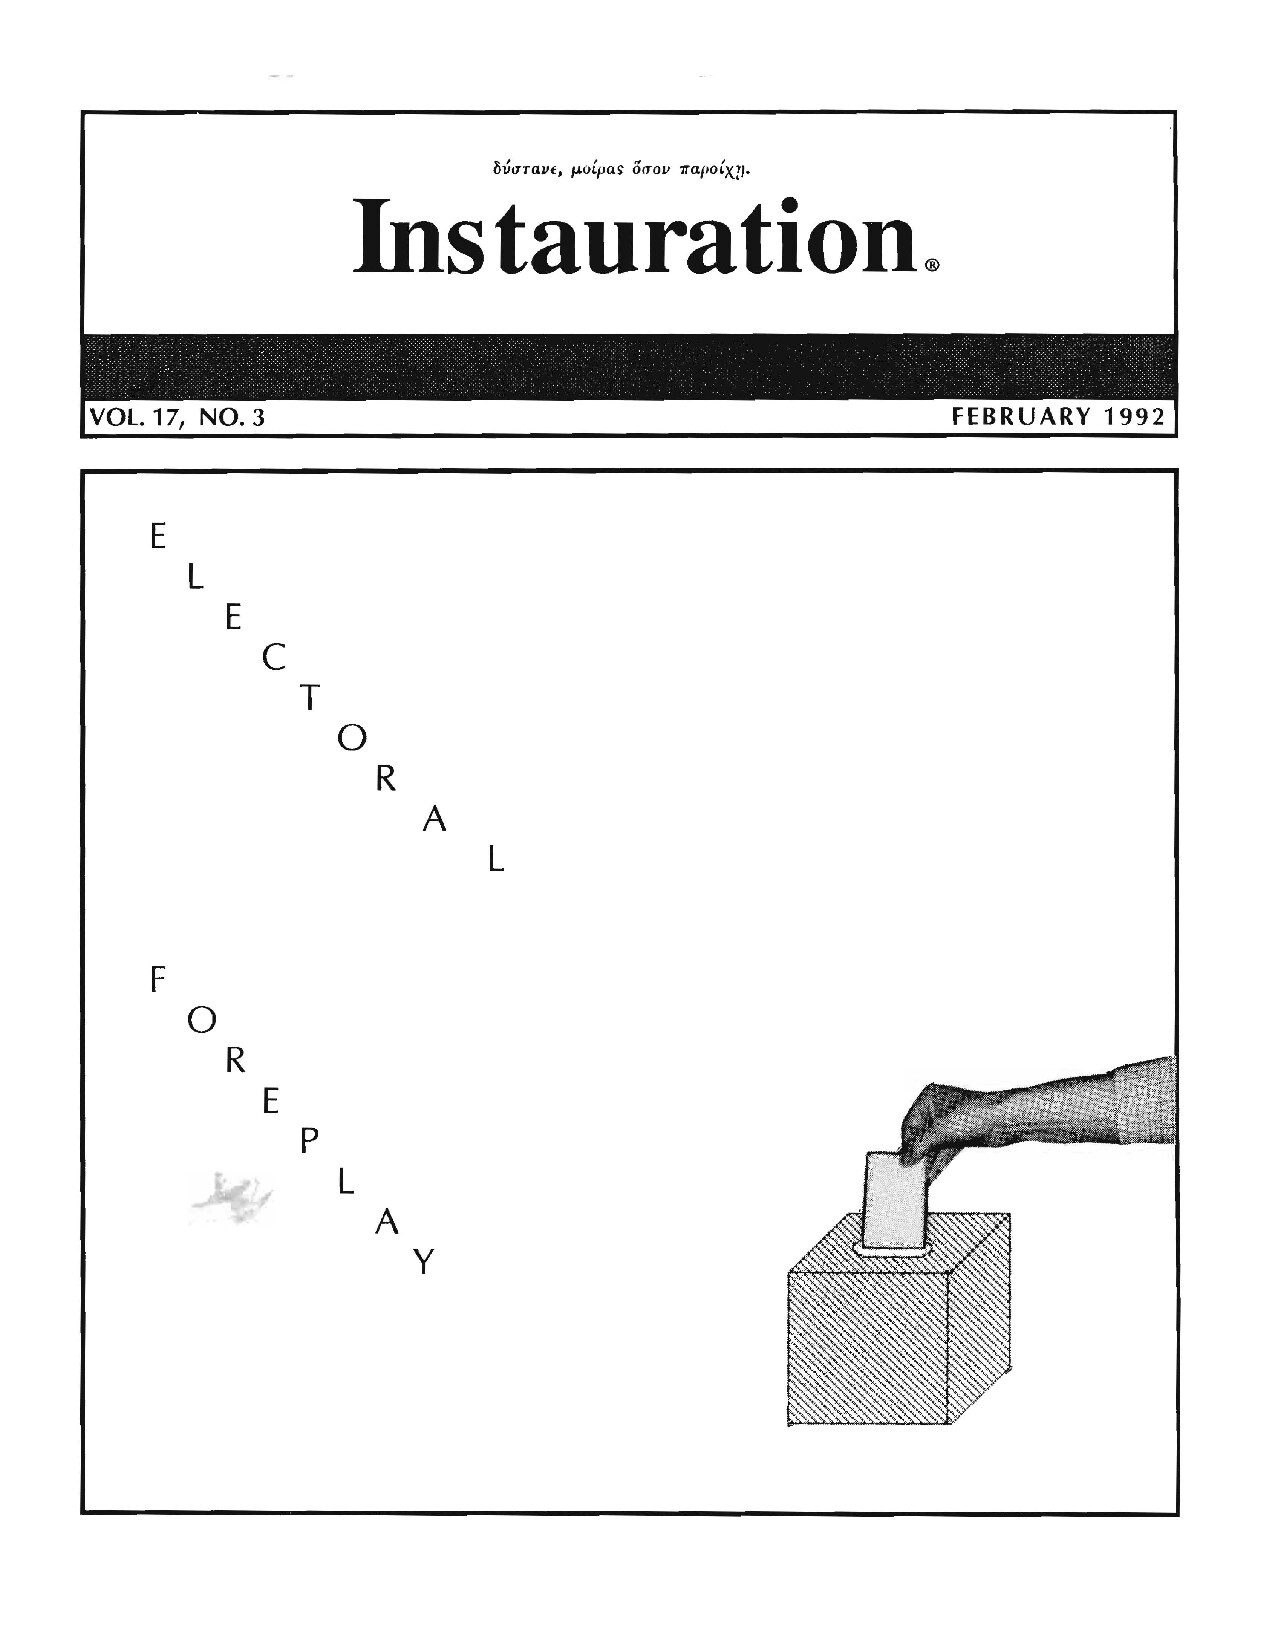 Instauration-1992-02-February-Vol17-No3